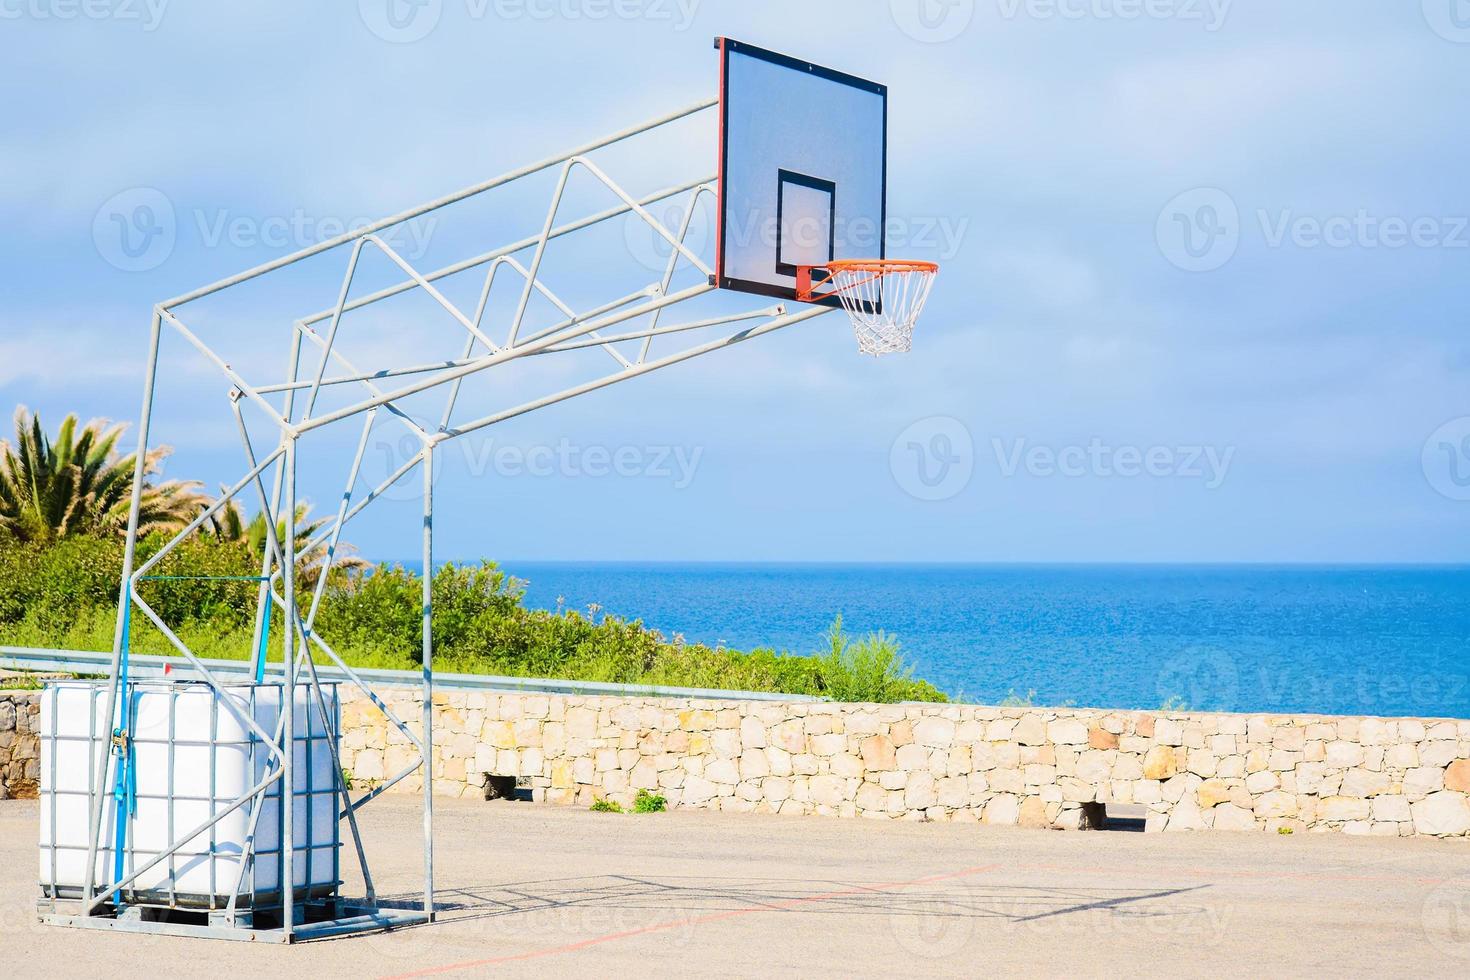 basketbalring aan zee foto